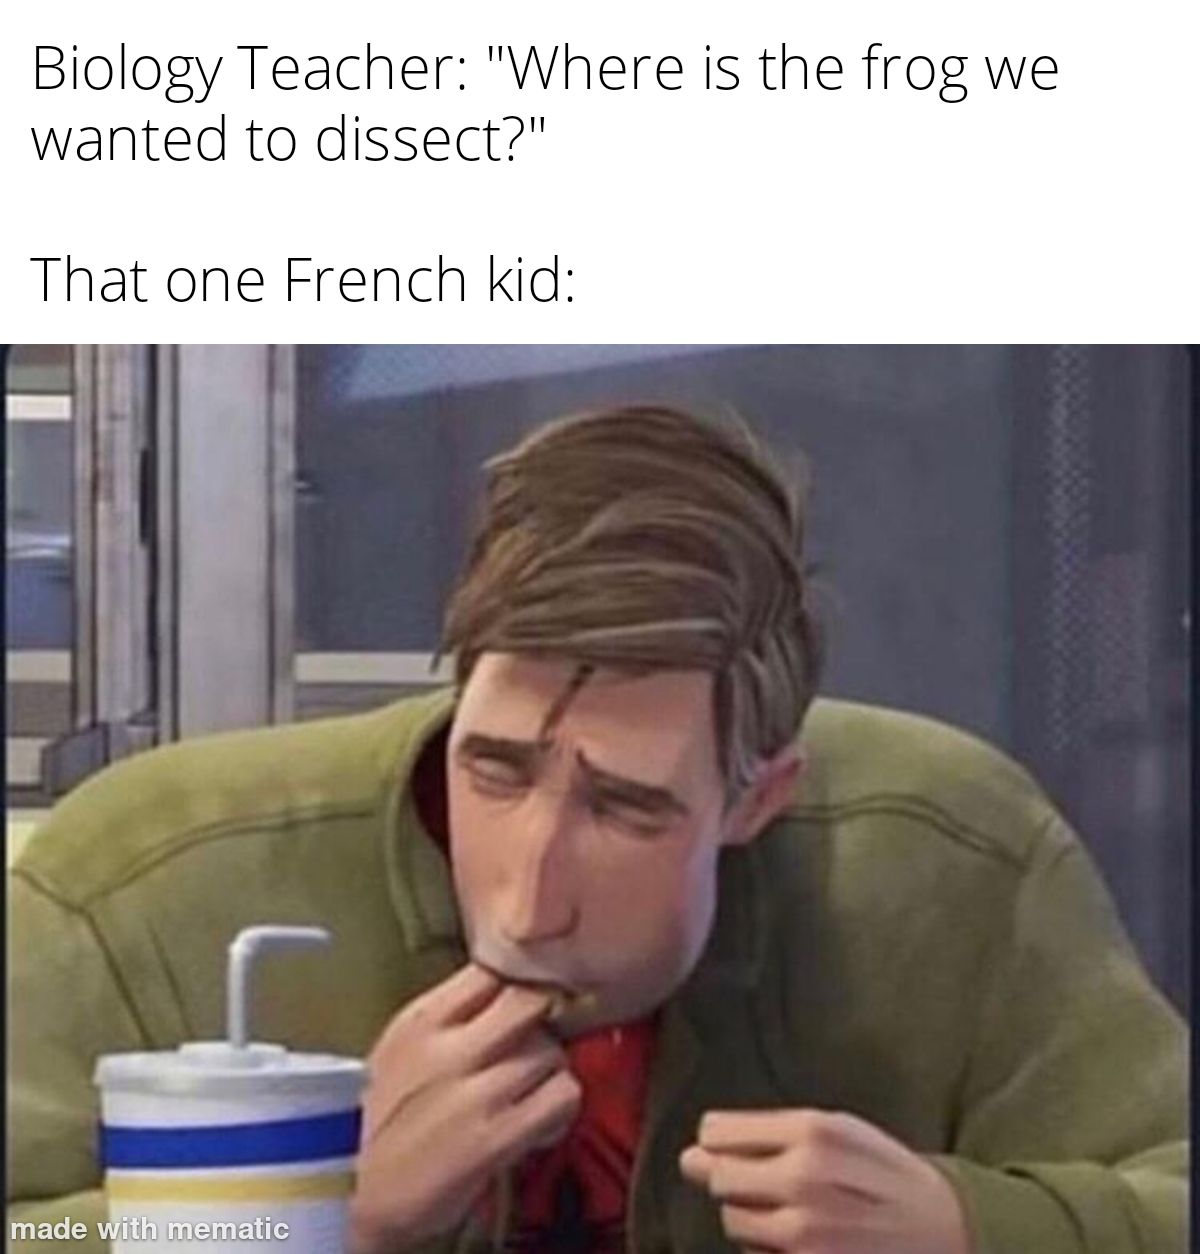 Where da frog at?